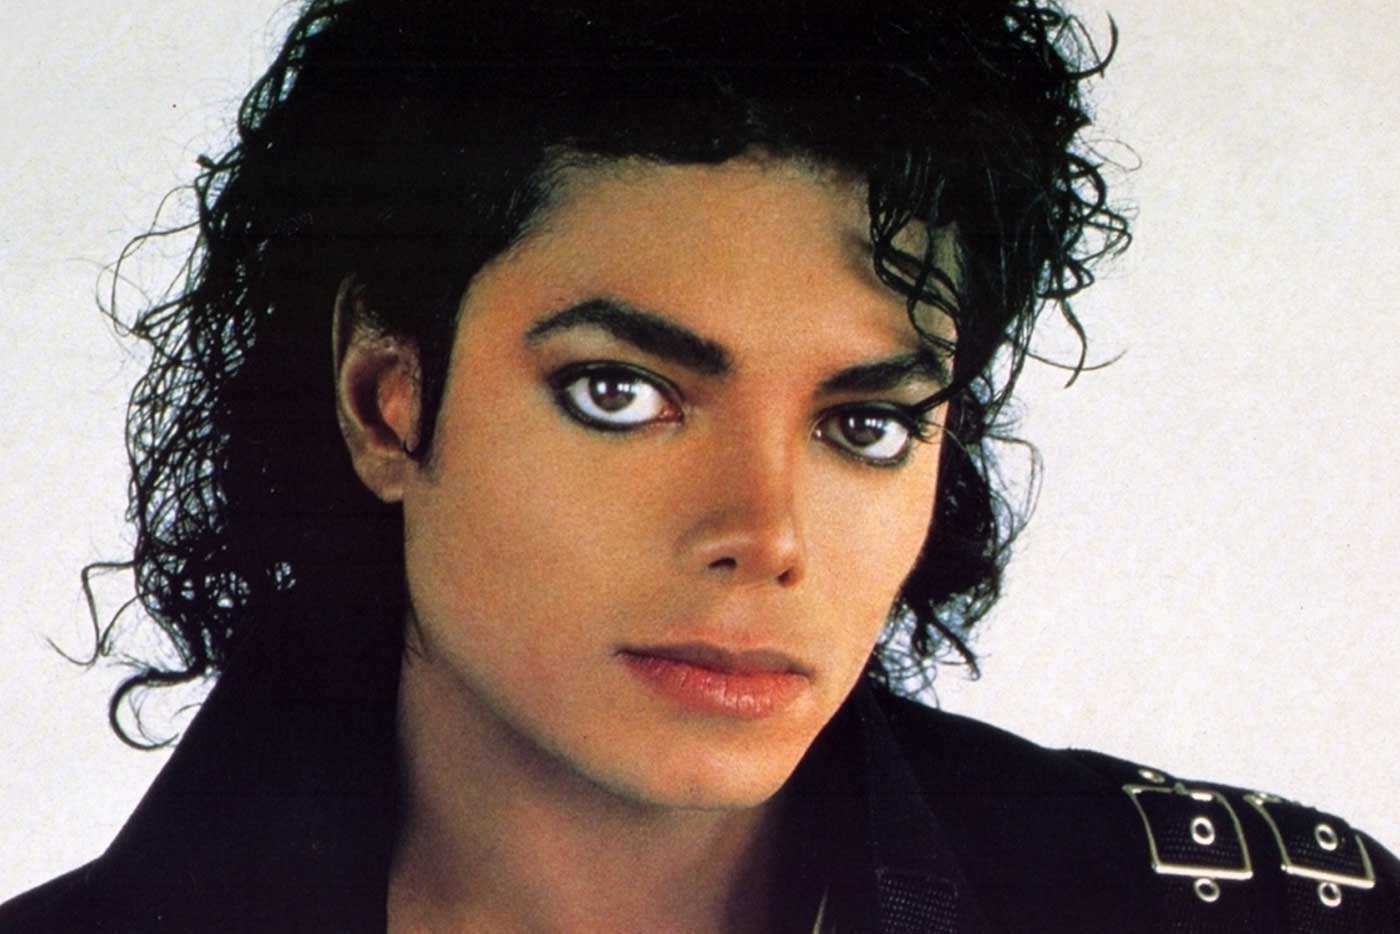 Se anuncia un reedición de cuarenta aniversario del mítico “Thriller”